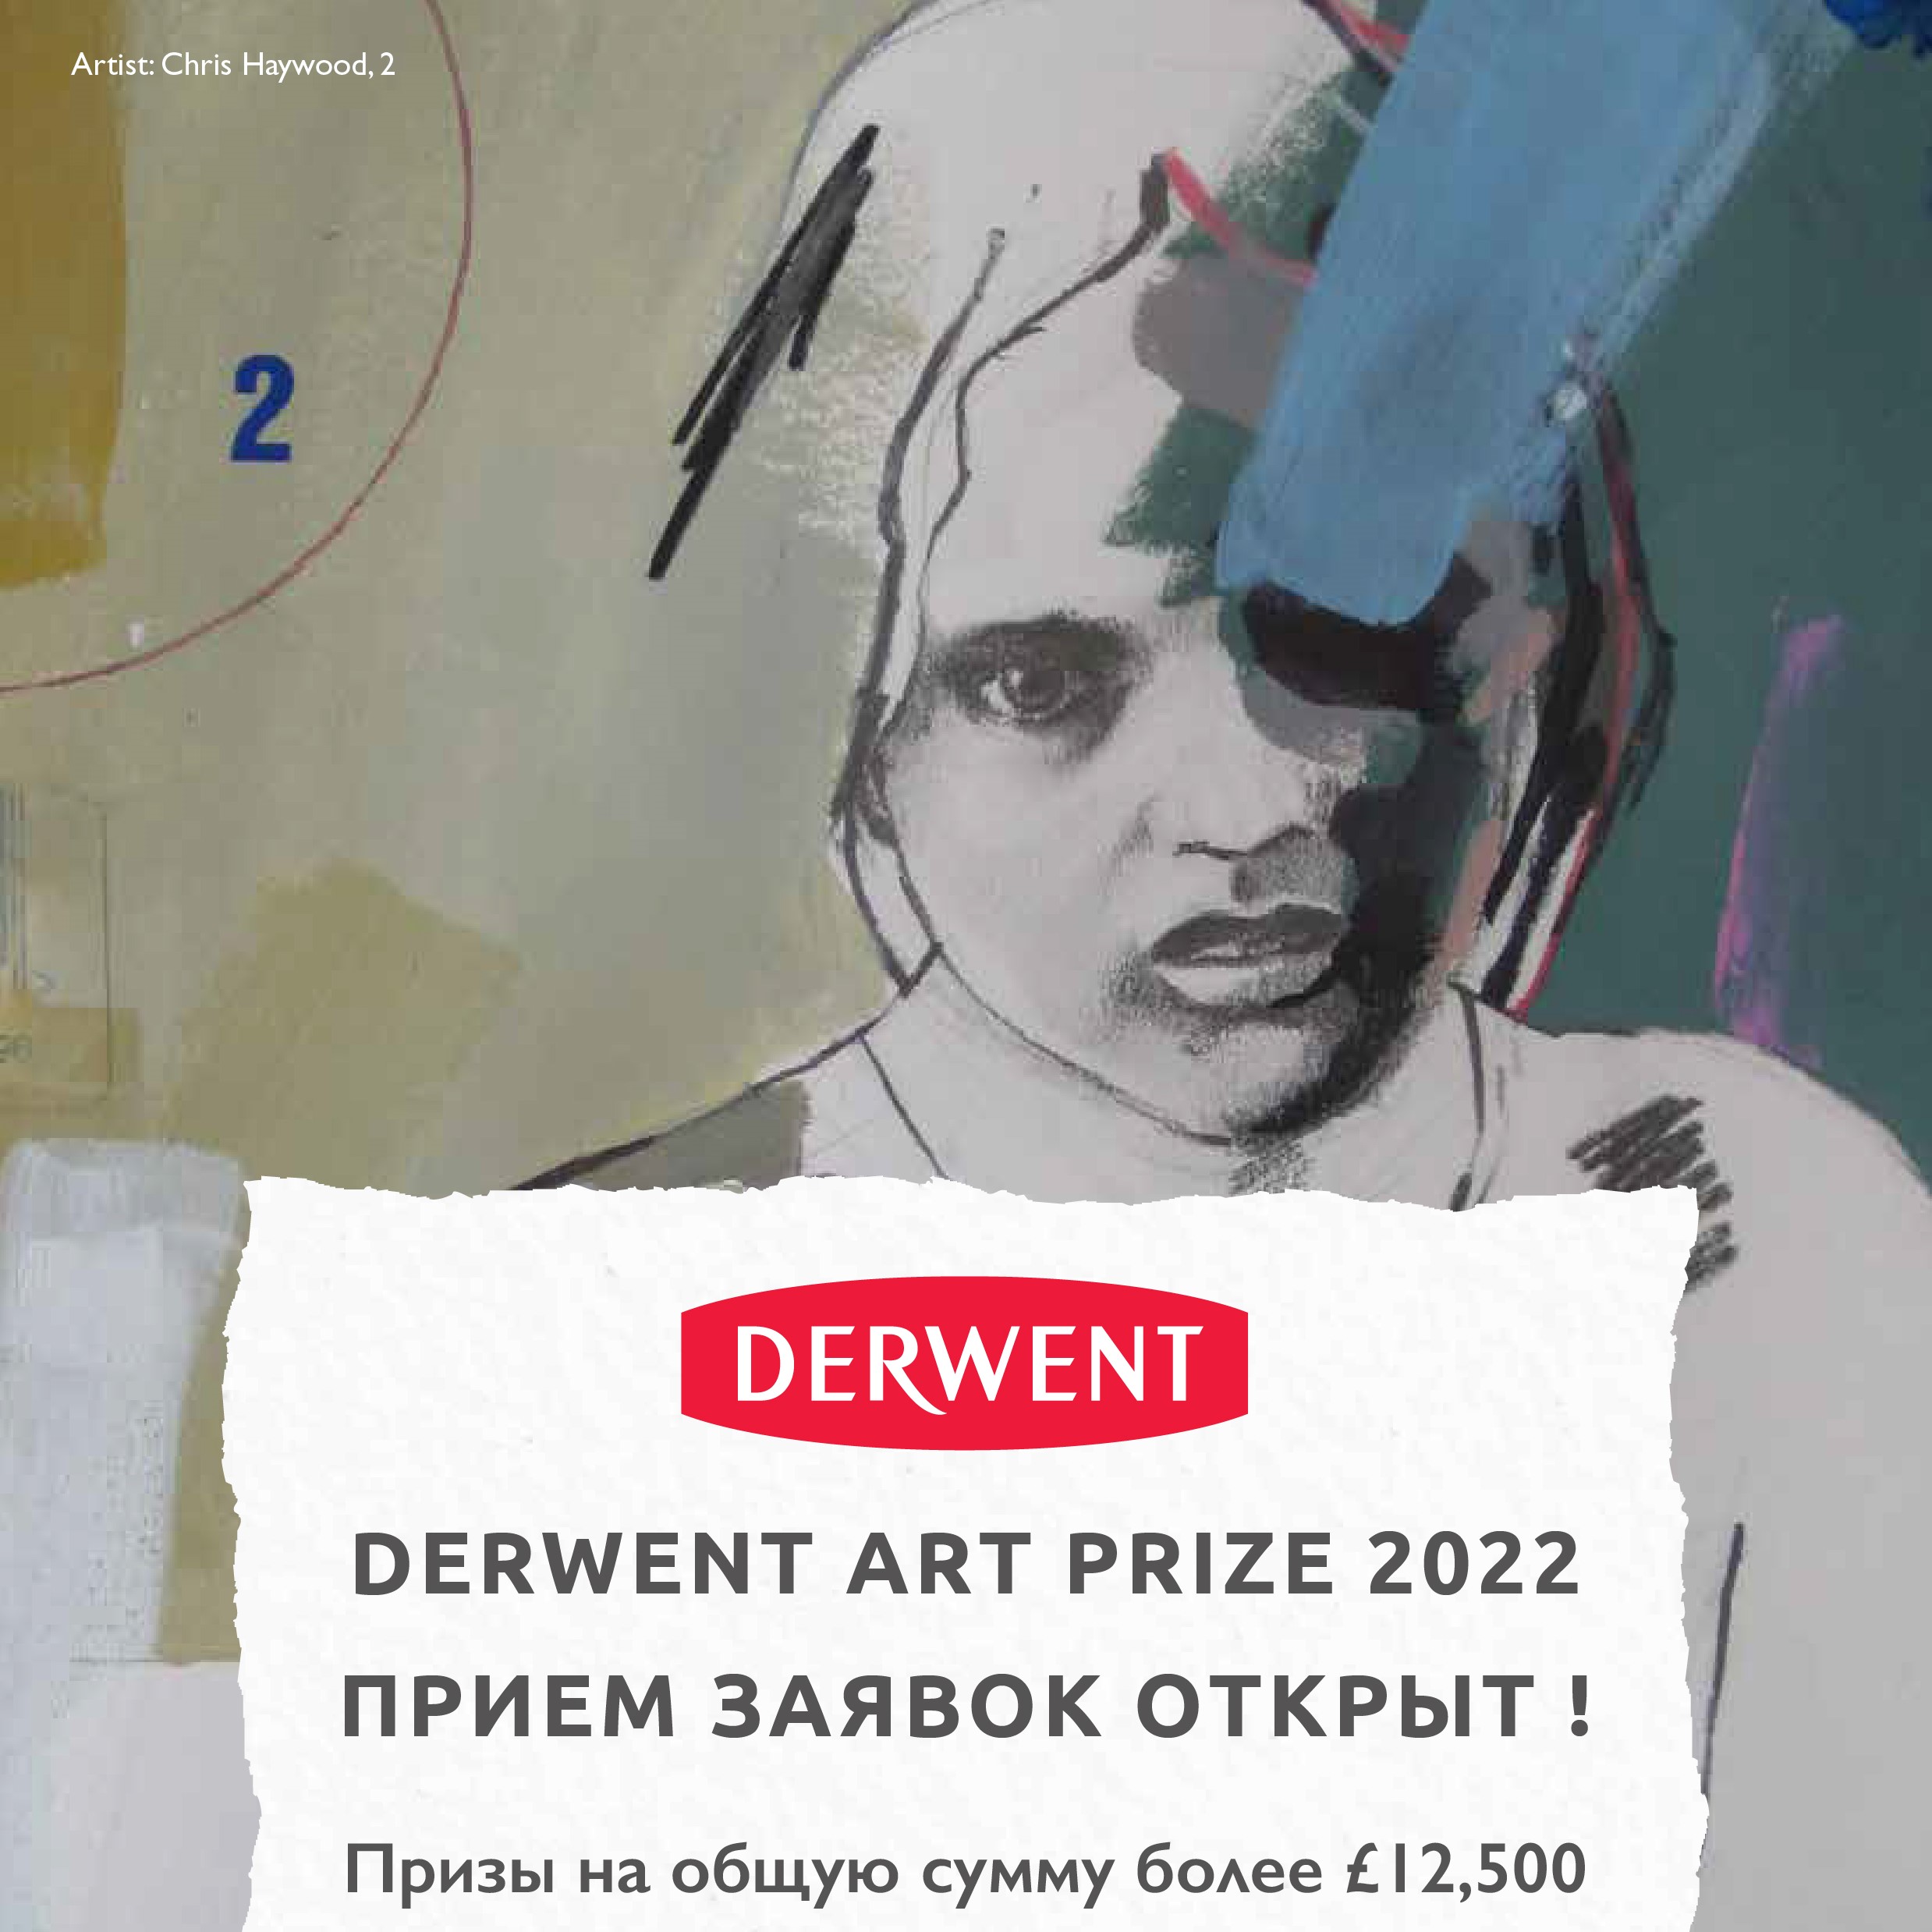 Derwent Art Prize